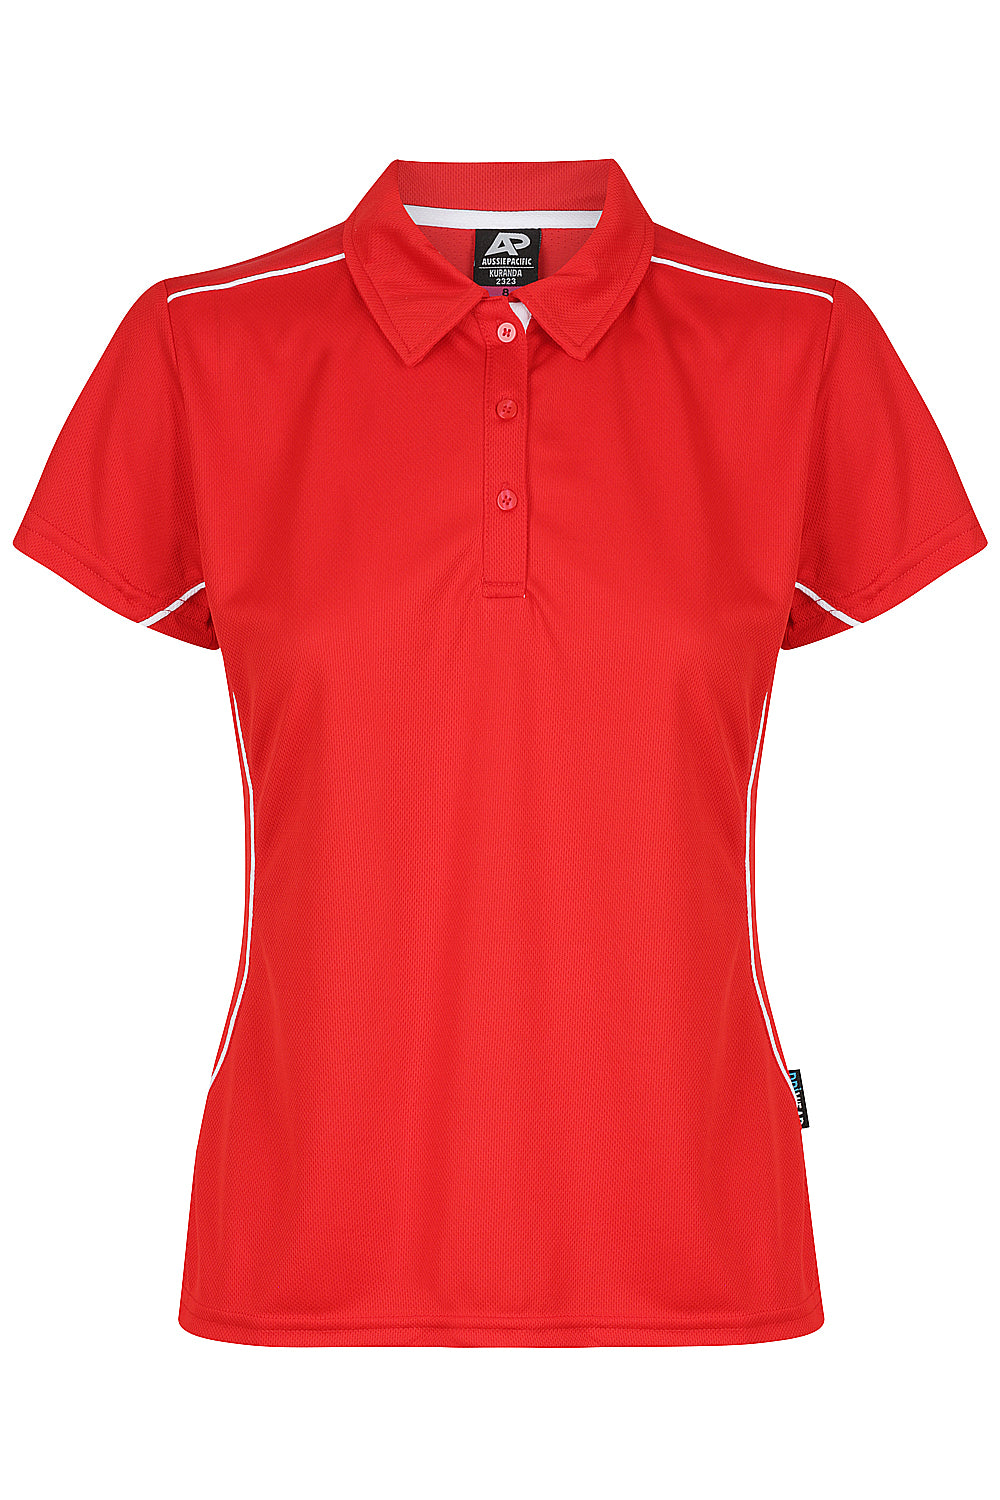 Custom Ladies Kurana Work Shirts - Red/White